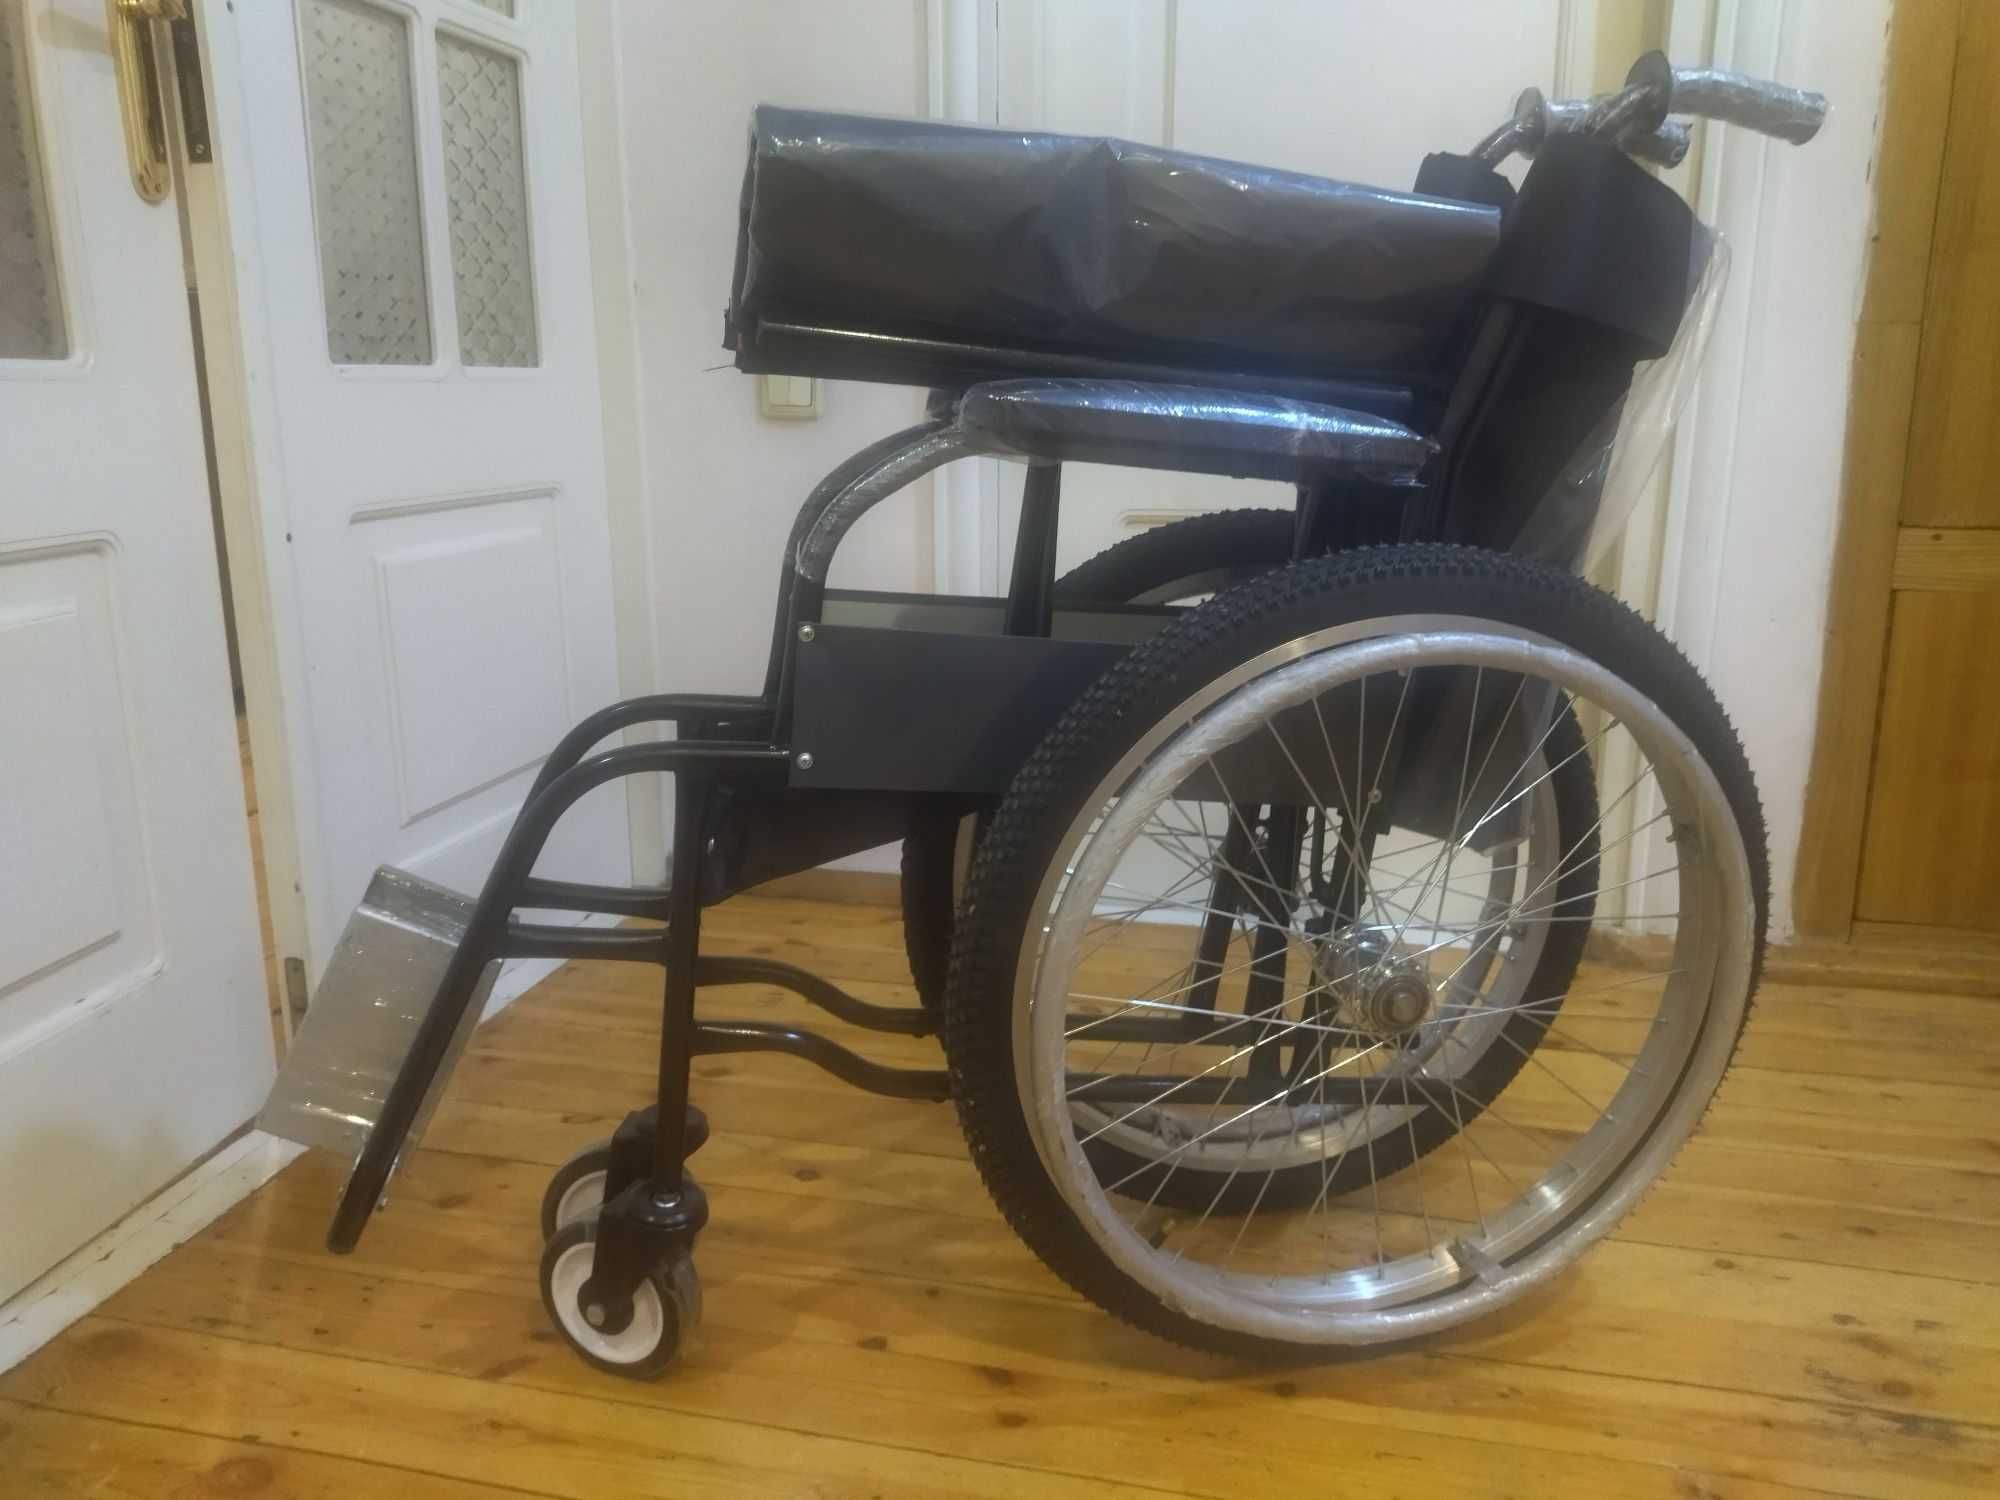 6
Nogironlar aravasi инвалидная коляска

929655